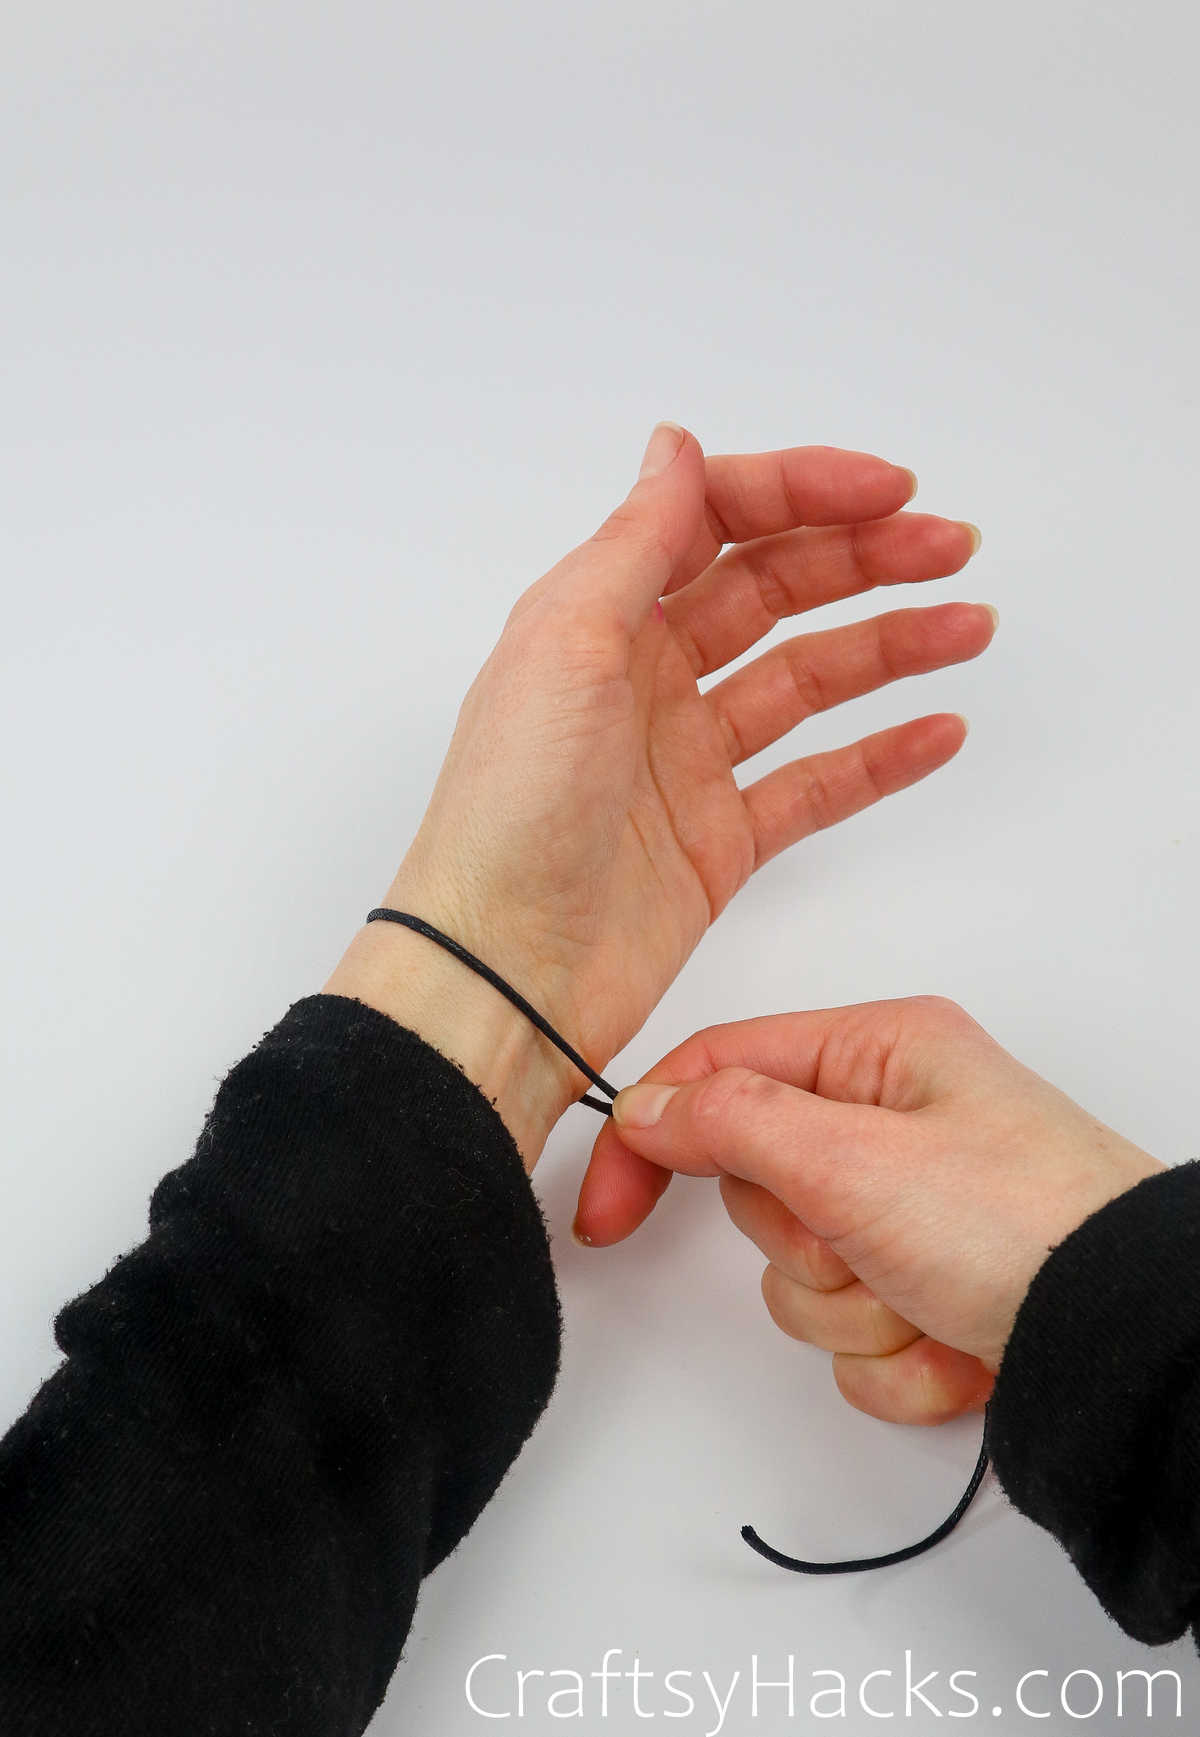 wrap piece of string around wrist to measure length